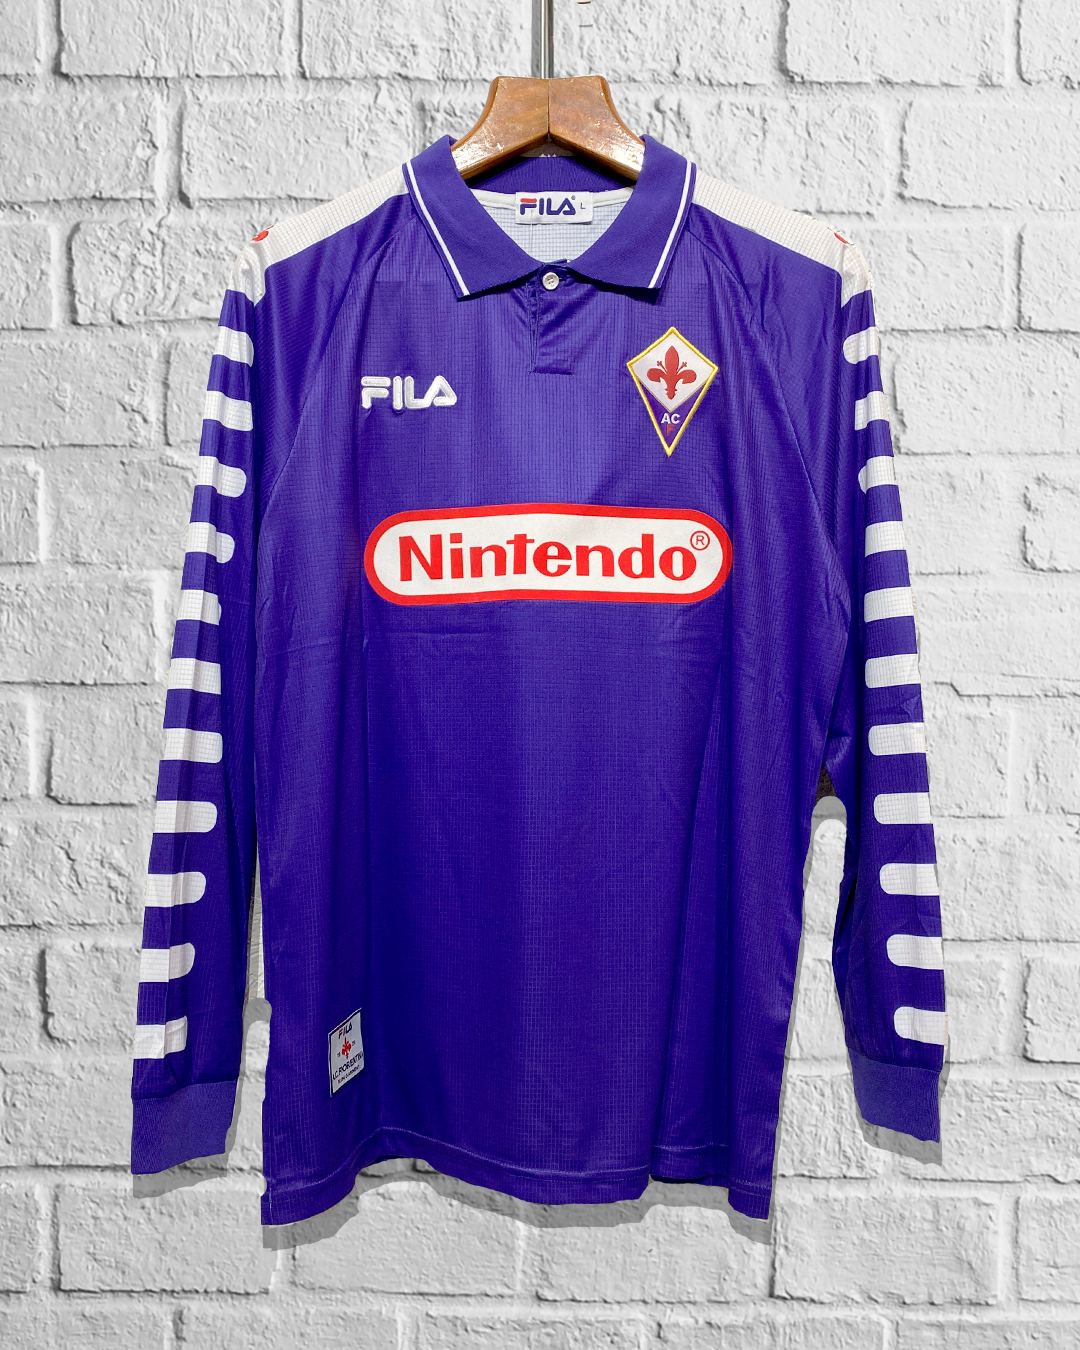 Jersey Retro Fiorentina 1998 1999 Local Batistuta Manga Larga